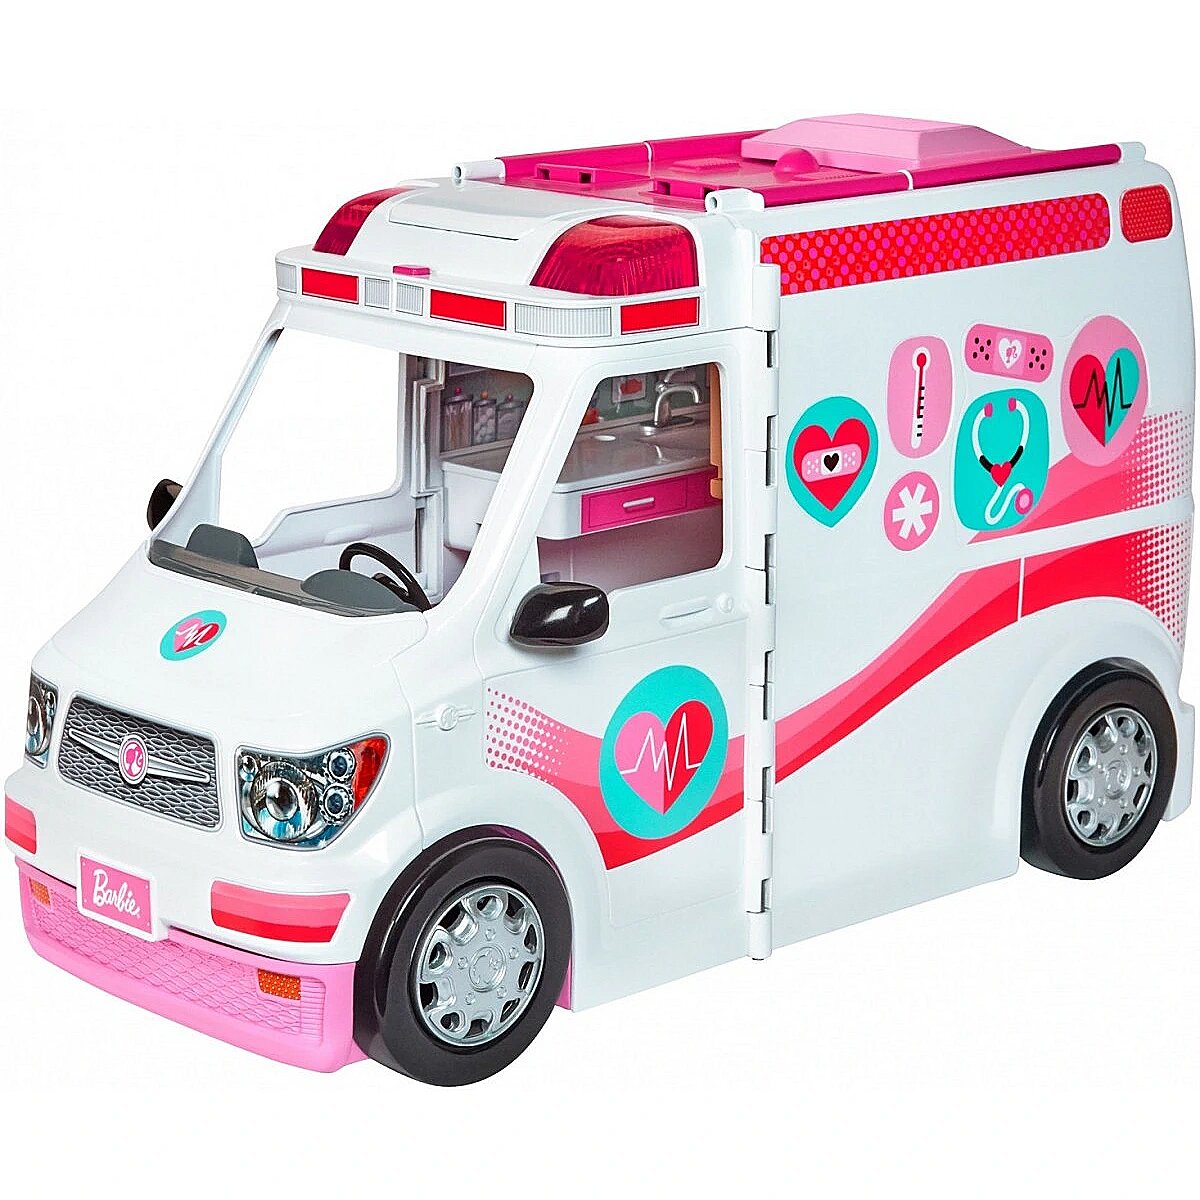 Можно машинки девочкам. Игровой набор Барби машина скорой помощи frm19 с куклой. Машинка для Барби. Кукла Барби машина скорой помощи. Игрушку Автодомик для Барби.